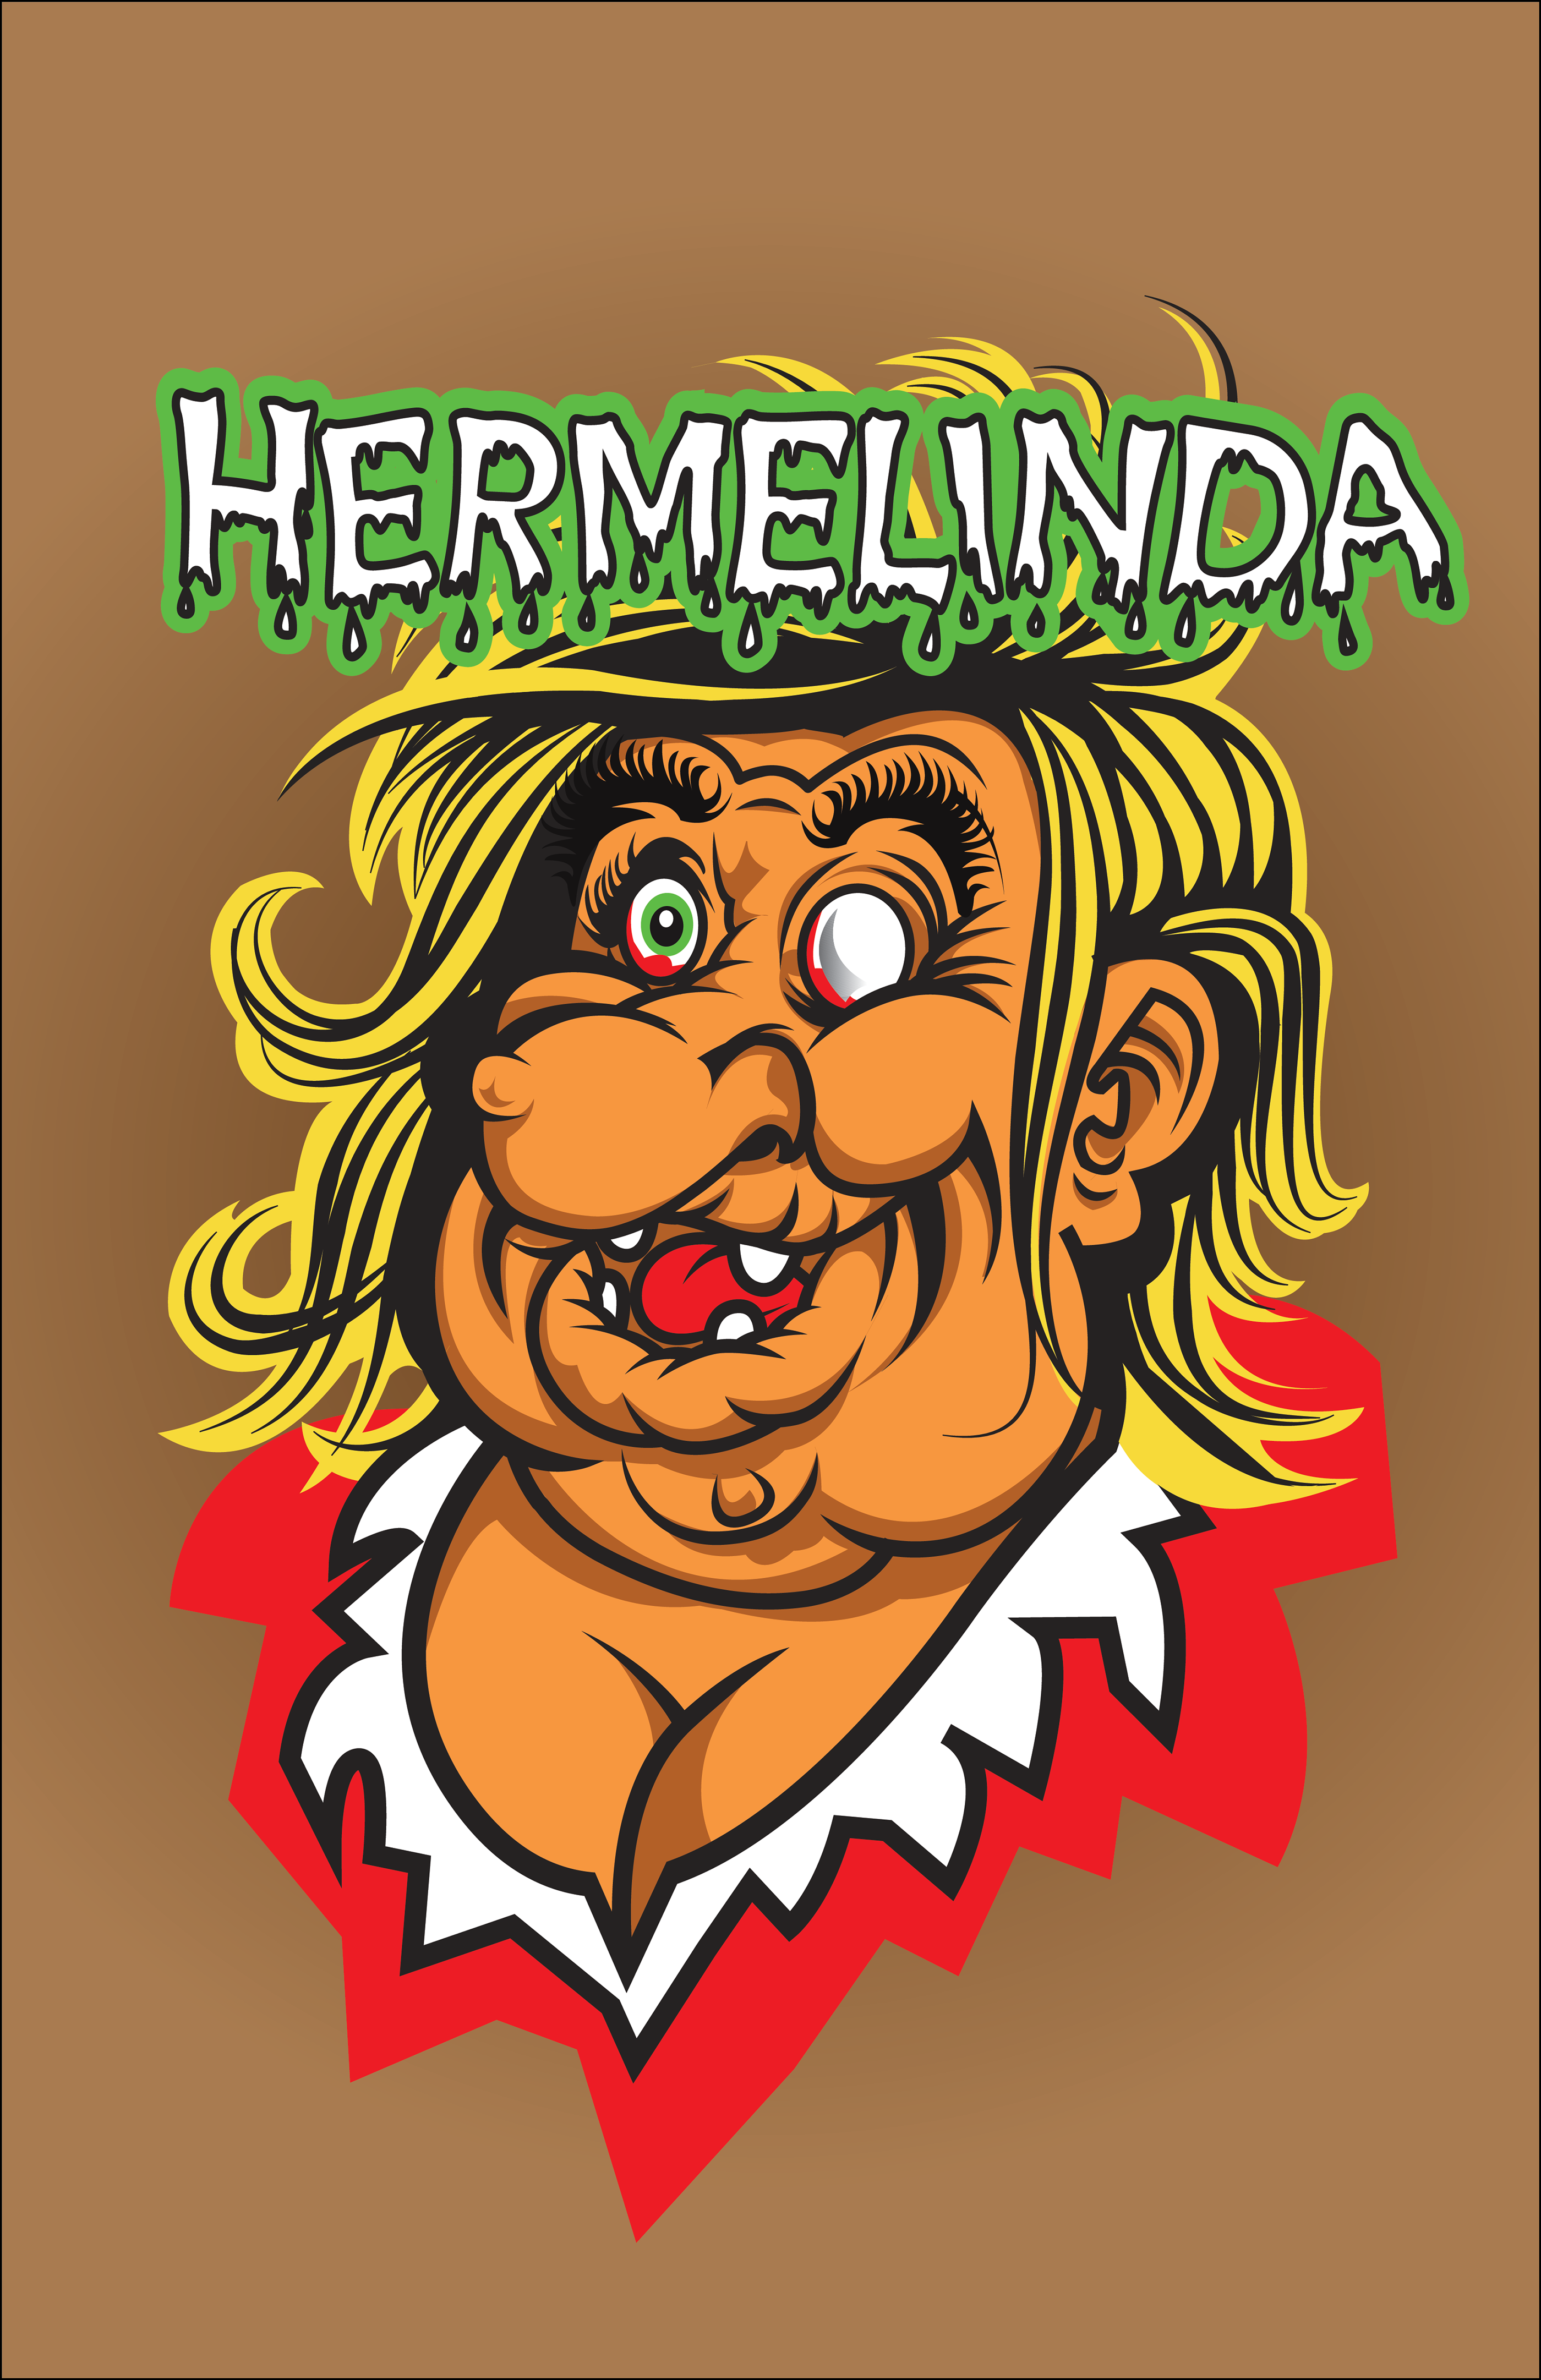 hermelinda LINDA prety witch ladys cartoon mexico brujerias comic shirt fan...